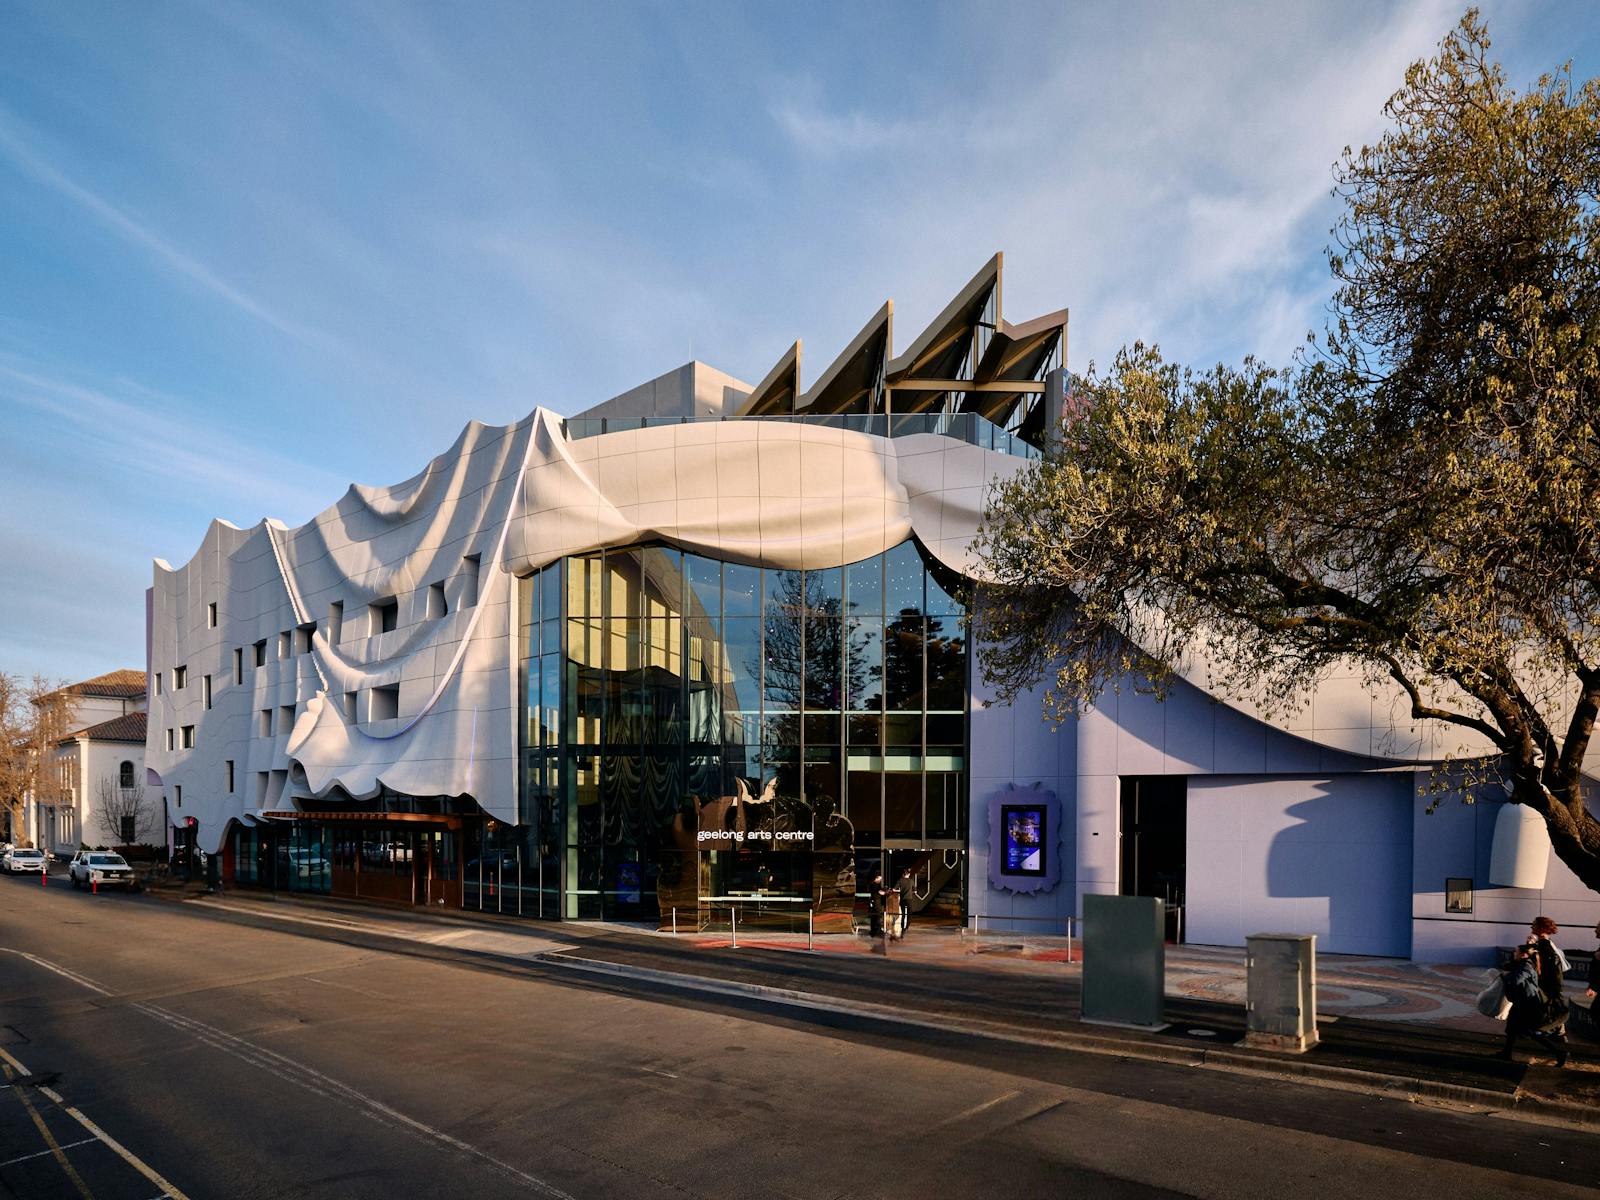 The facade of the new Geelong Arts Centre.